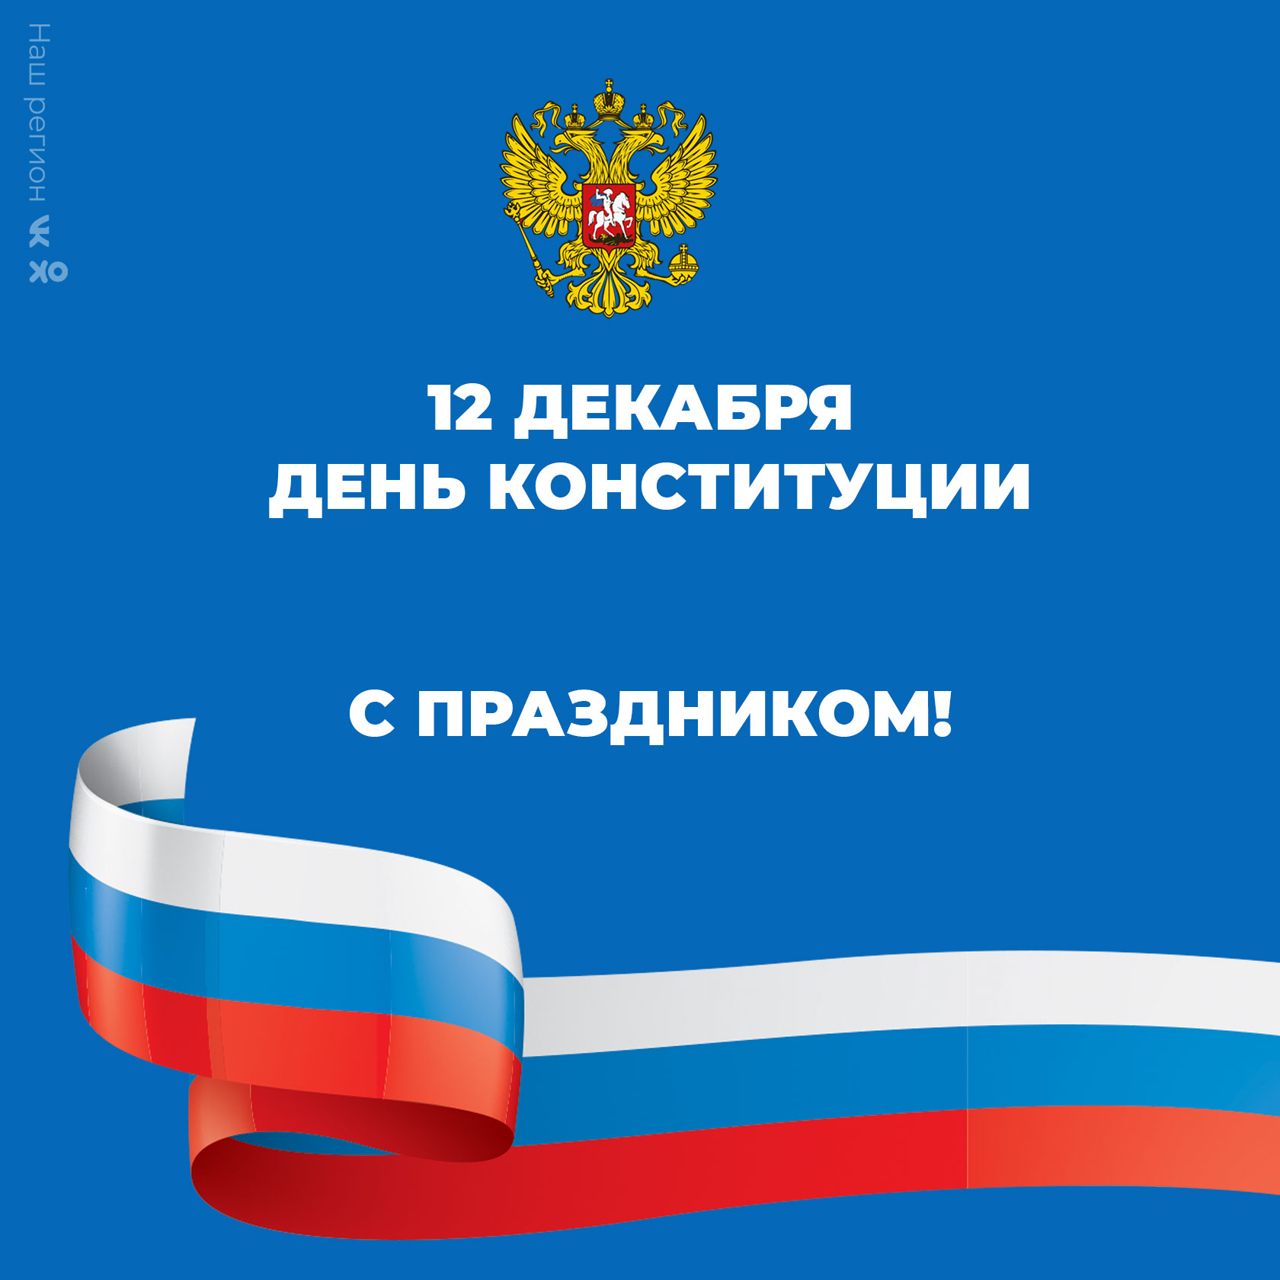 Конституция России — голос многонациональной страны, объединившей самые разные народы.